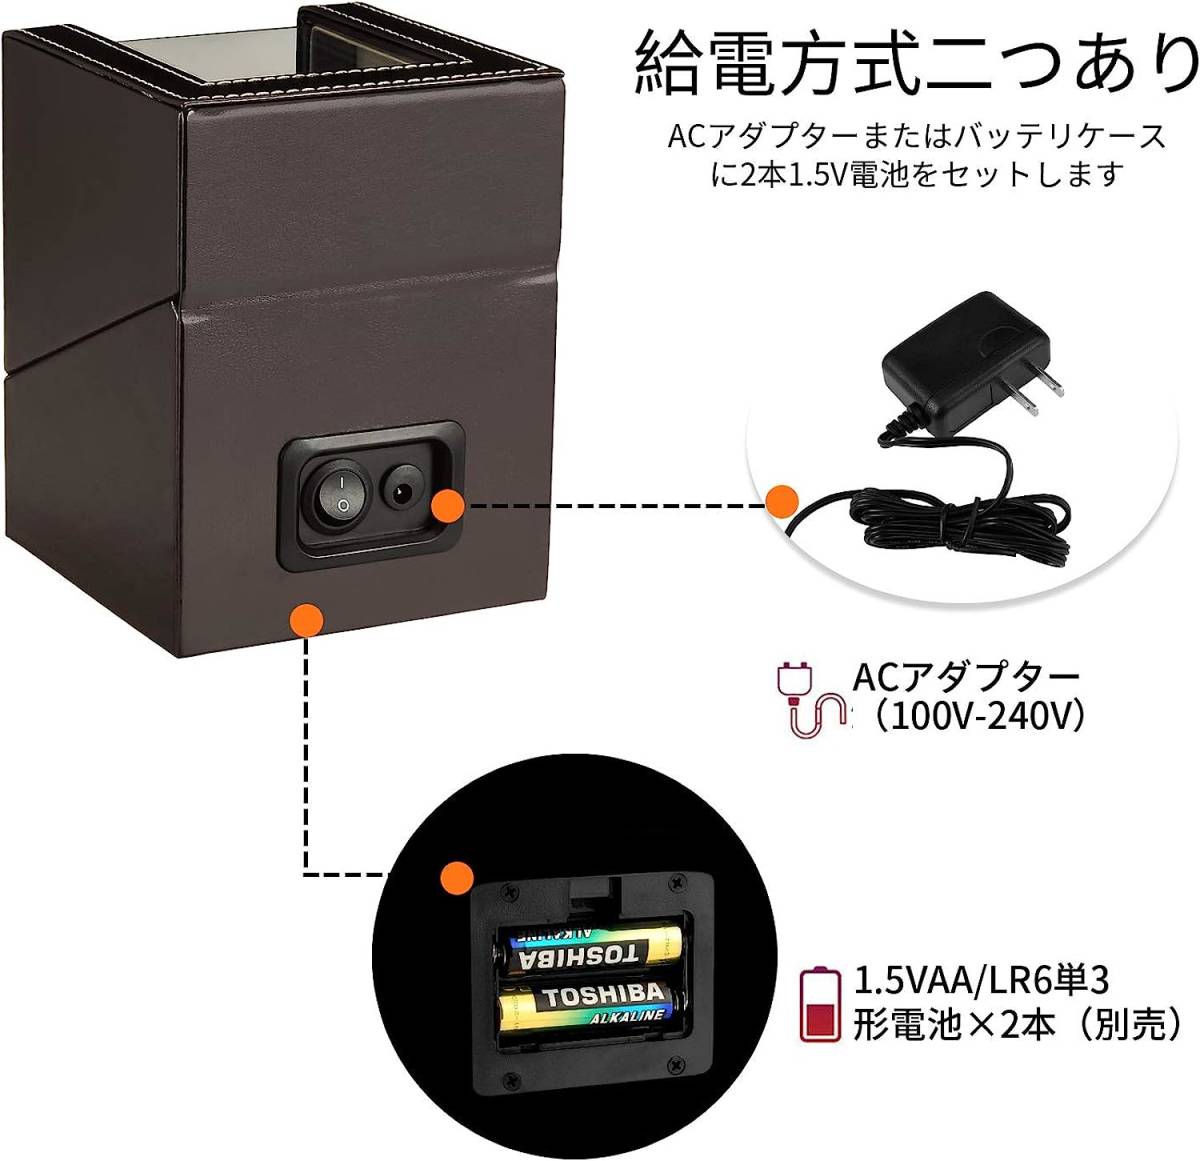 静音な日本製マブチモーター採用 自動巻き時計 ワインディングマシーン 自動巻き上げ機 高級PU皮質 ブラウン色 1本巻きタイプの画像3